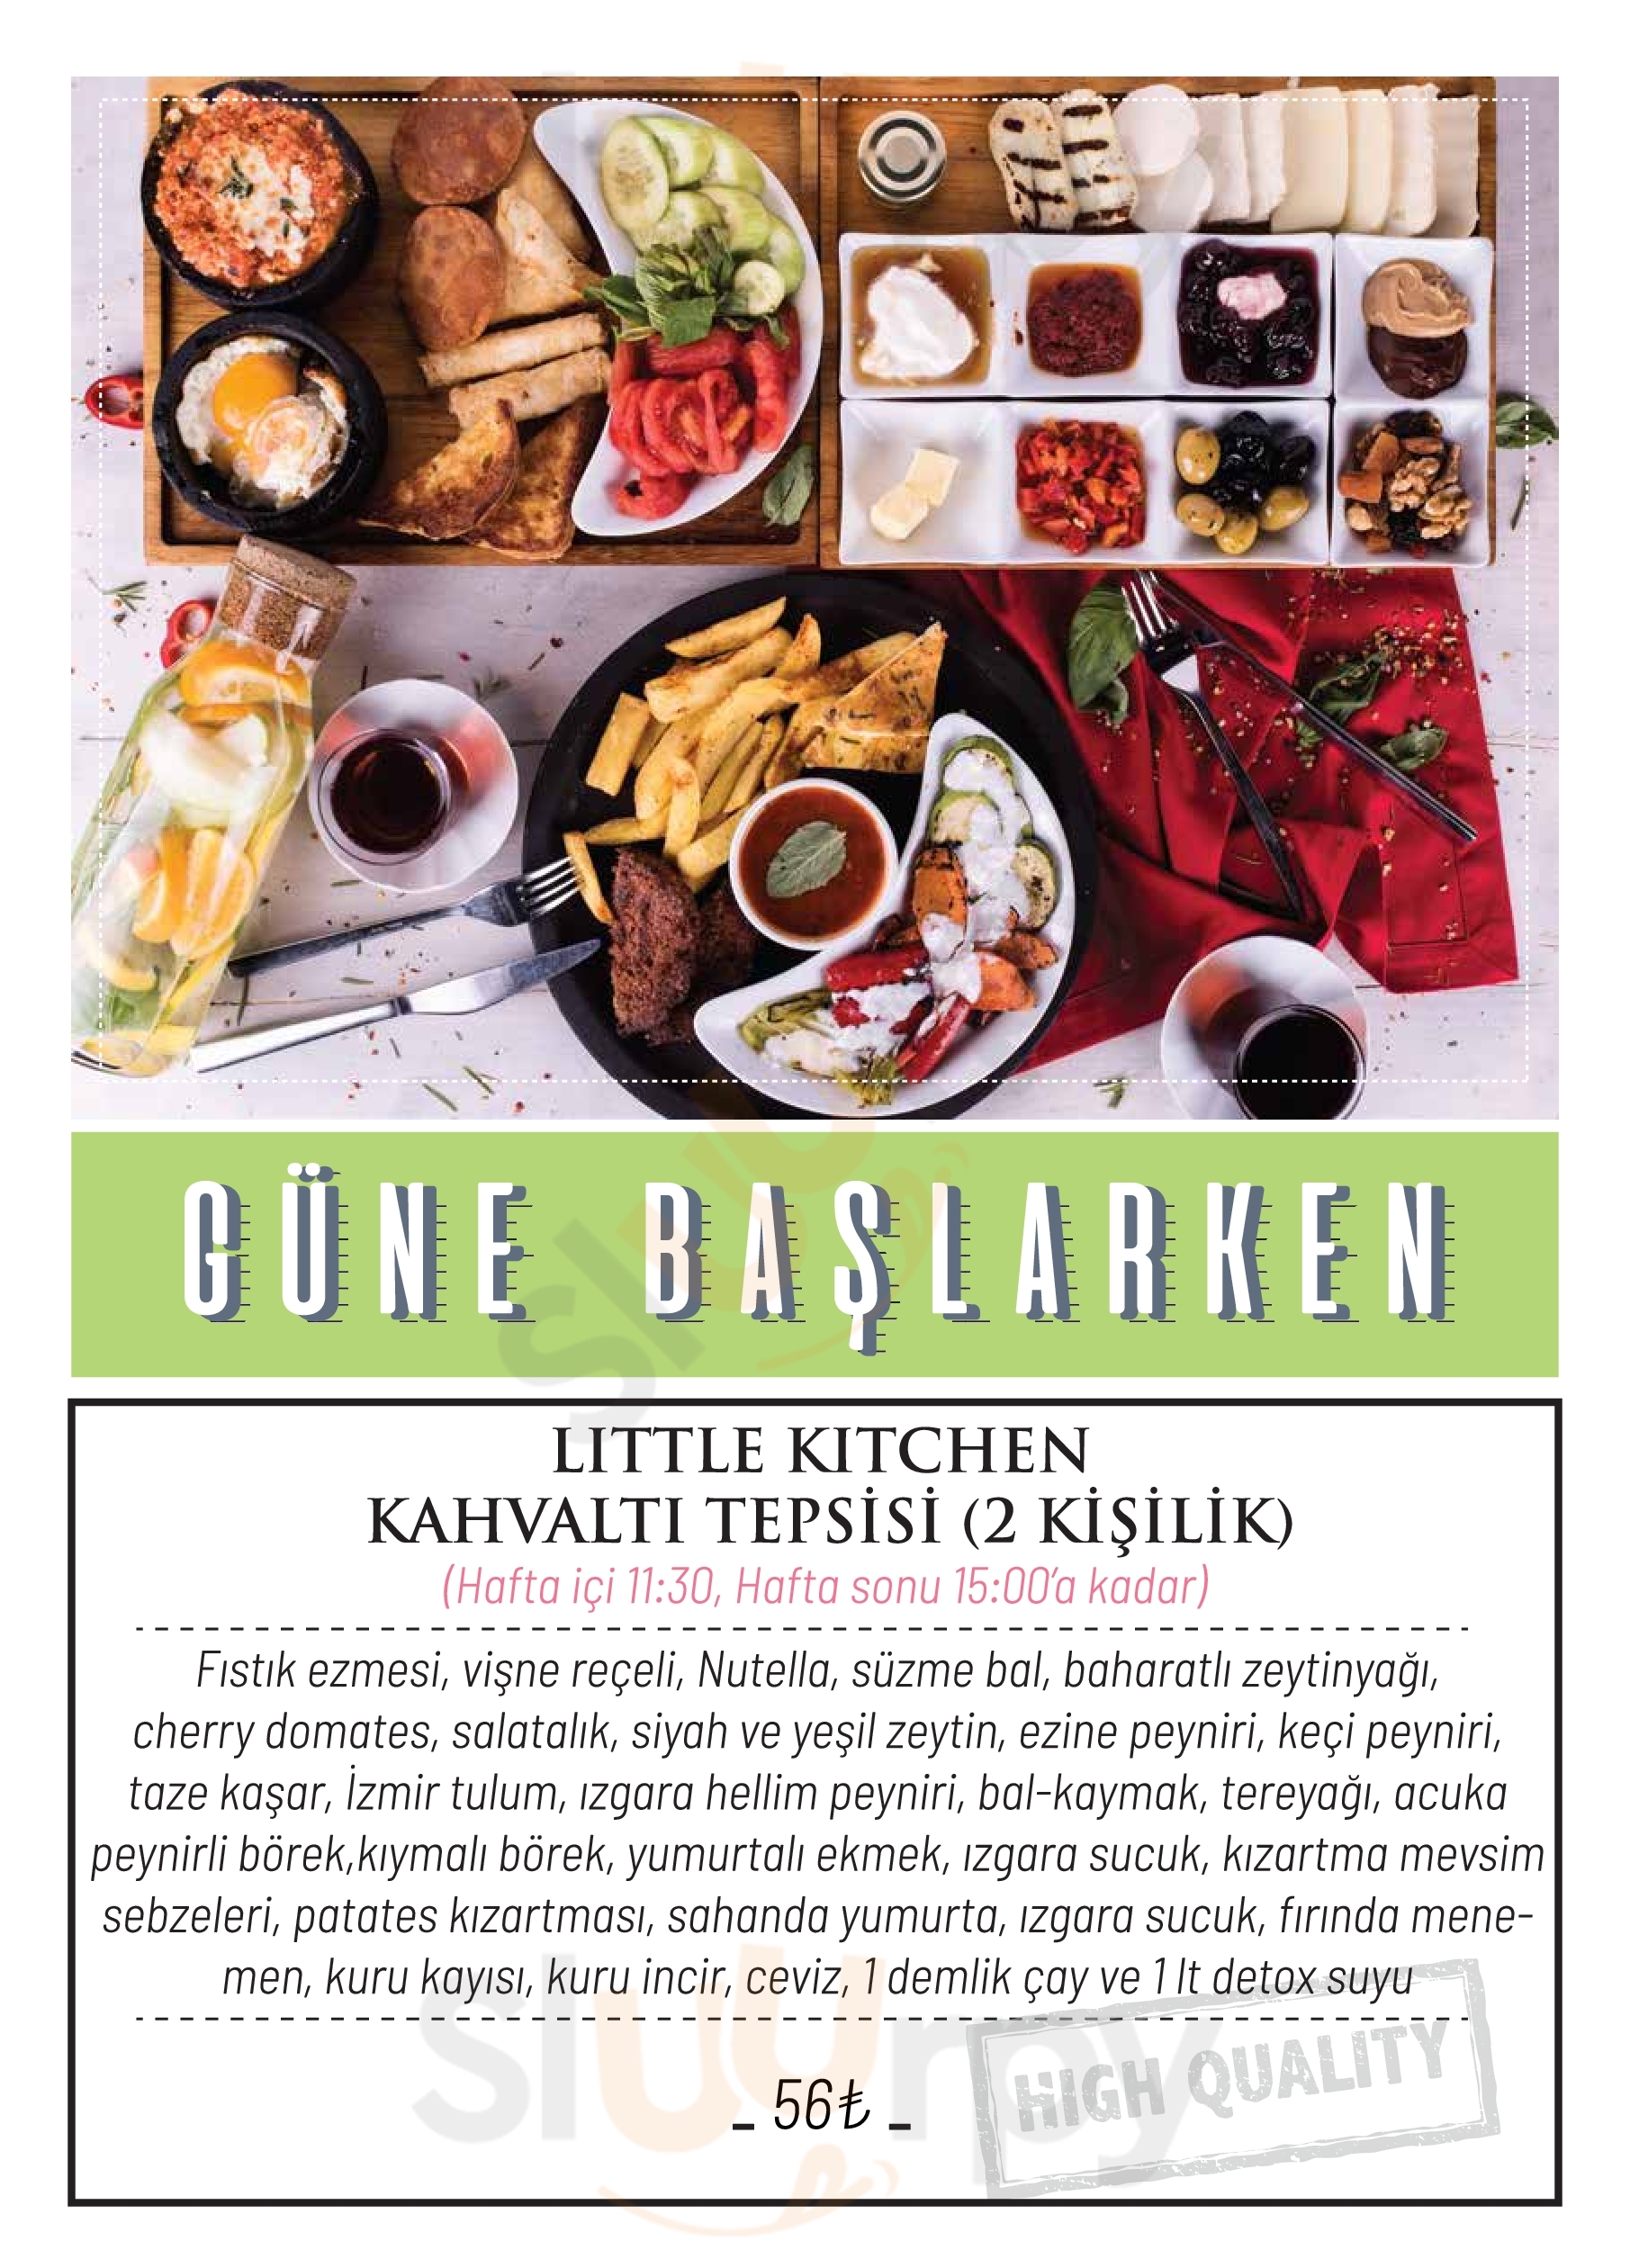 Little Kitchen Osmangazi Menu - 1